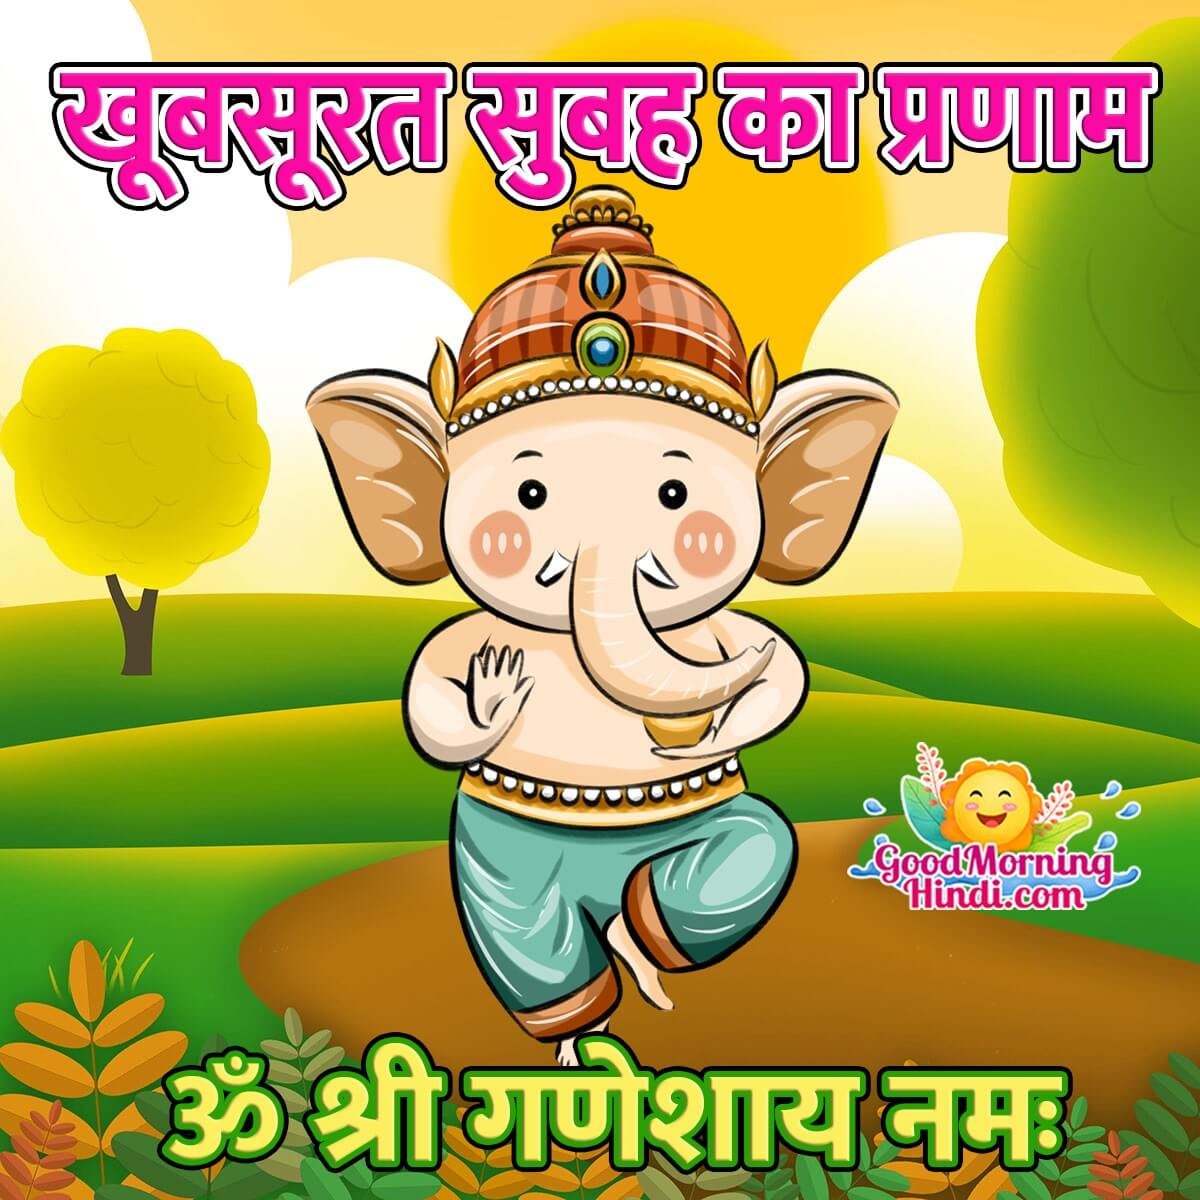 Good Morning Ganesha Hindi Images - Good Morning Wishes & Images ...